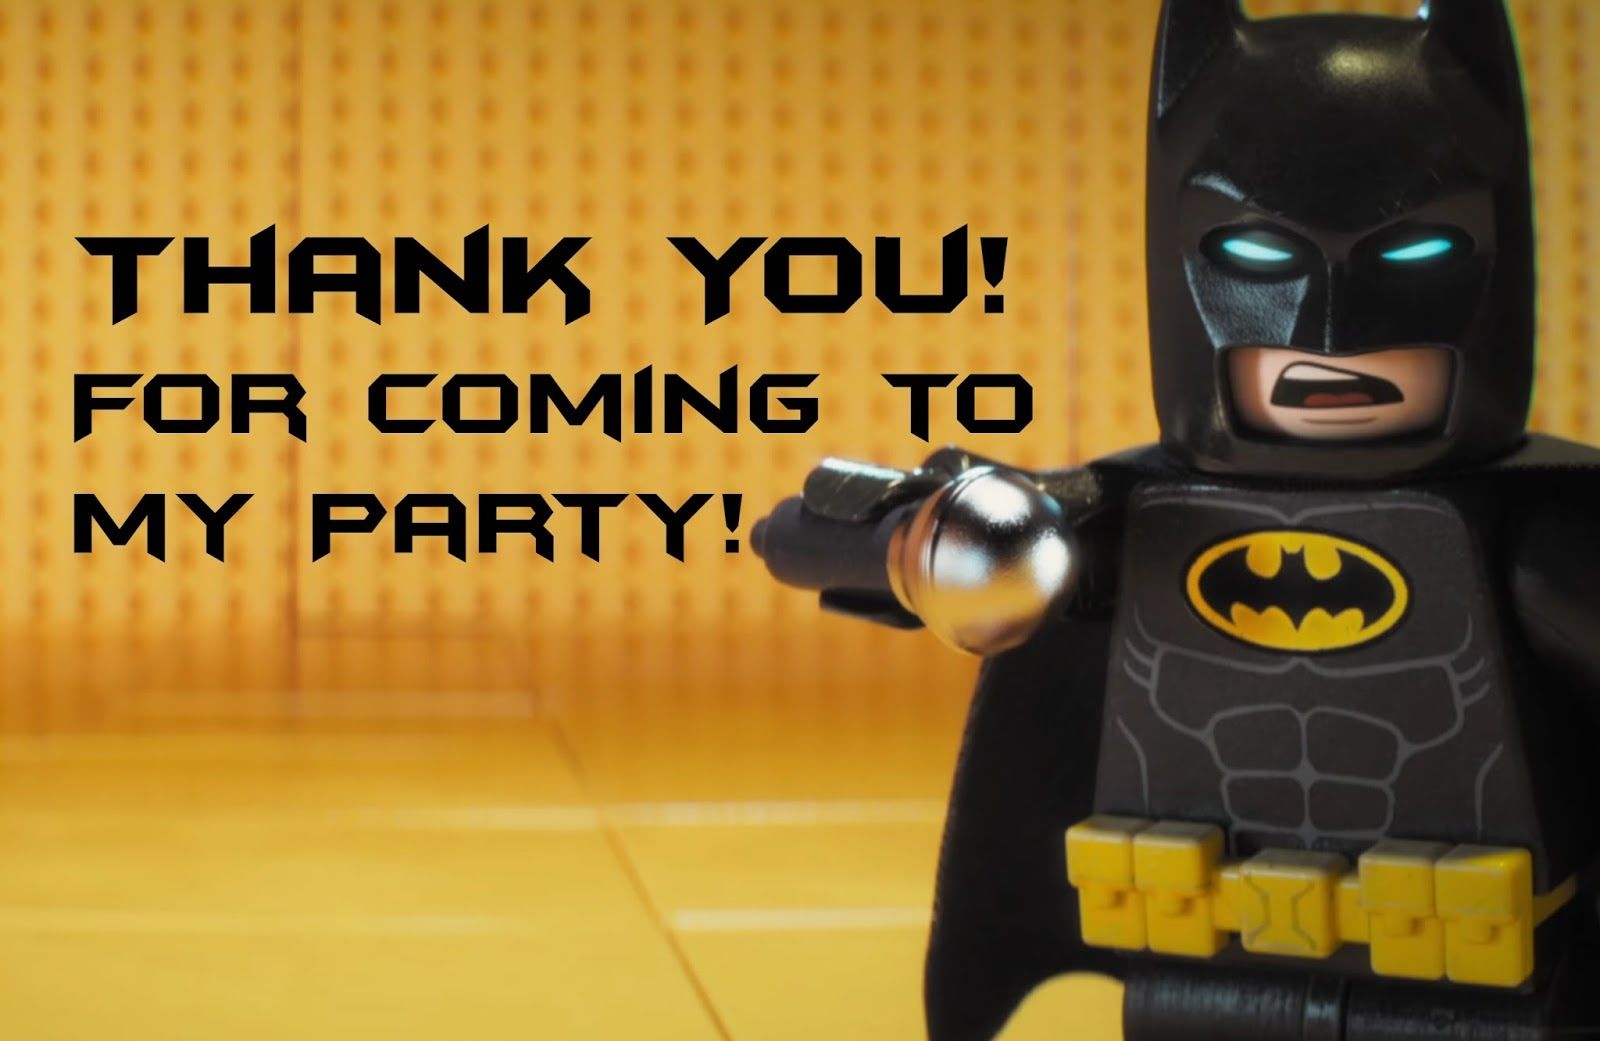 Lego Batman Thank You Cards | Lego Party | Pinterest - Feestje En Lego - Free Printable Lego Batman